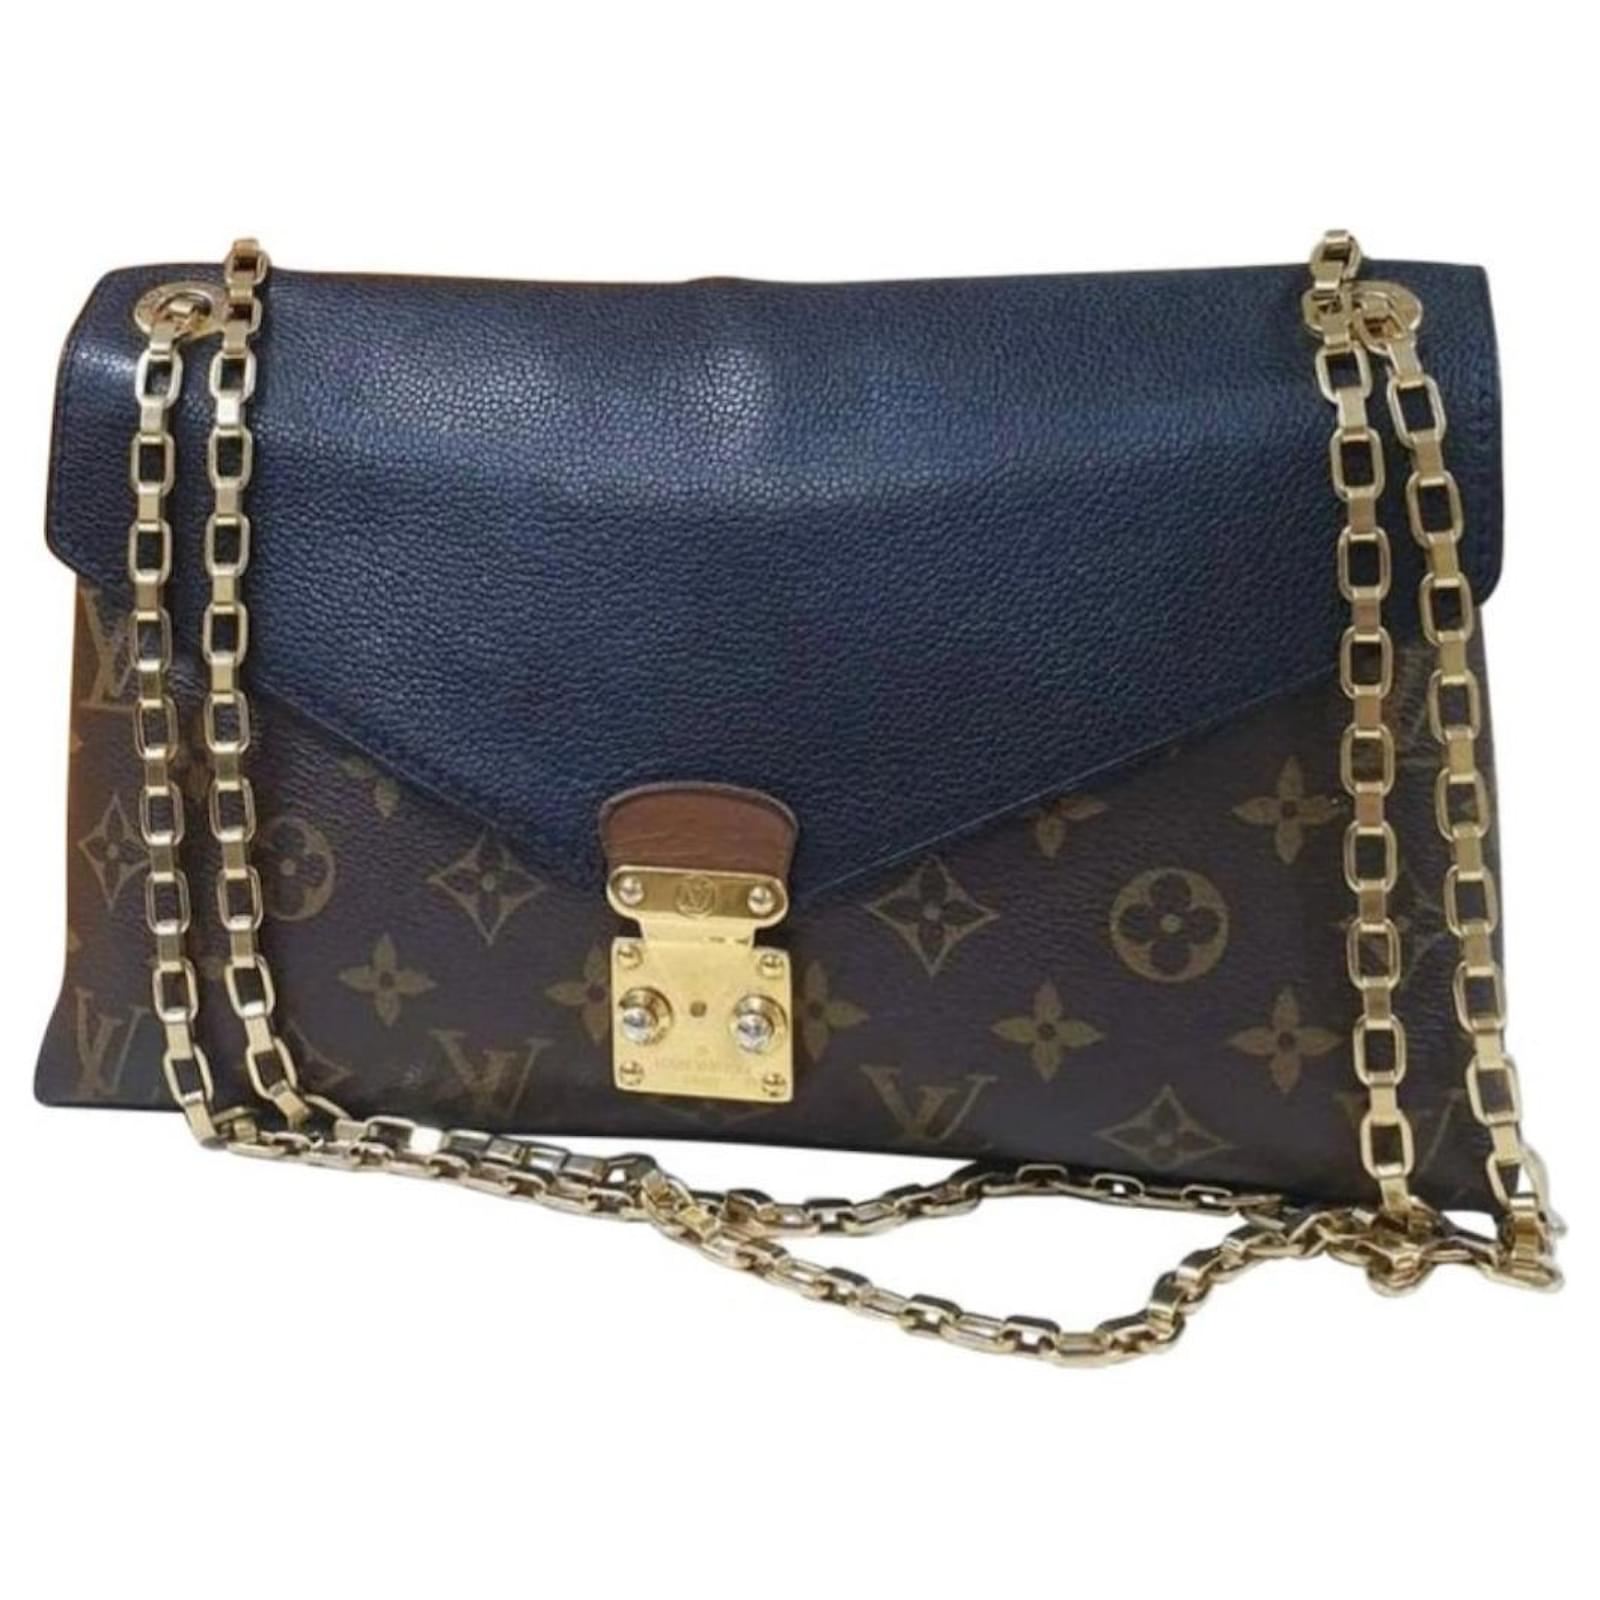 lv black chain purse